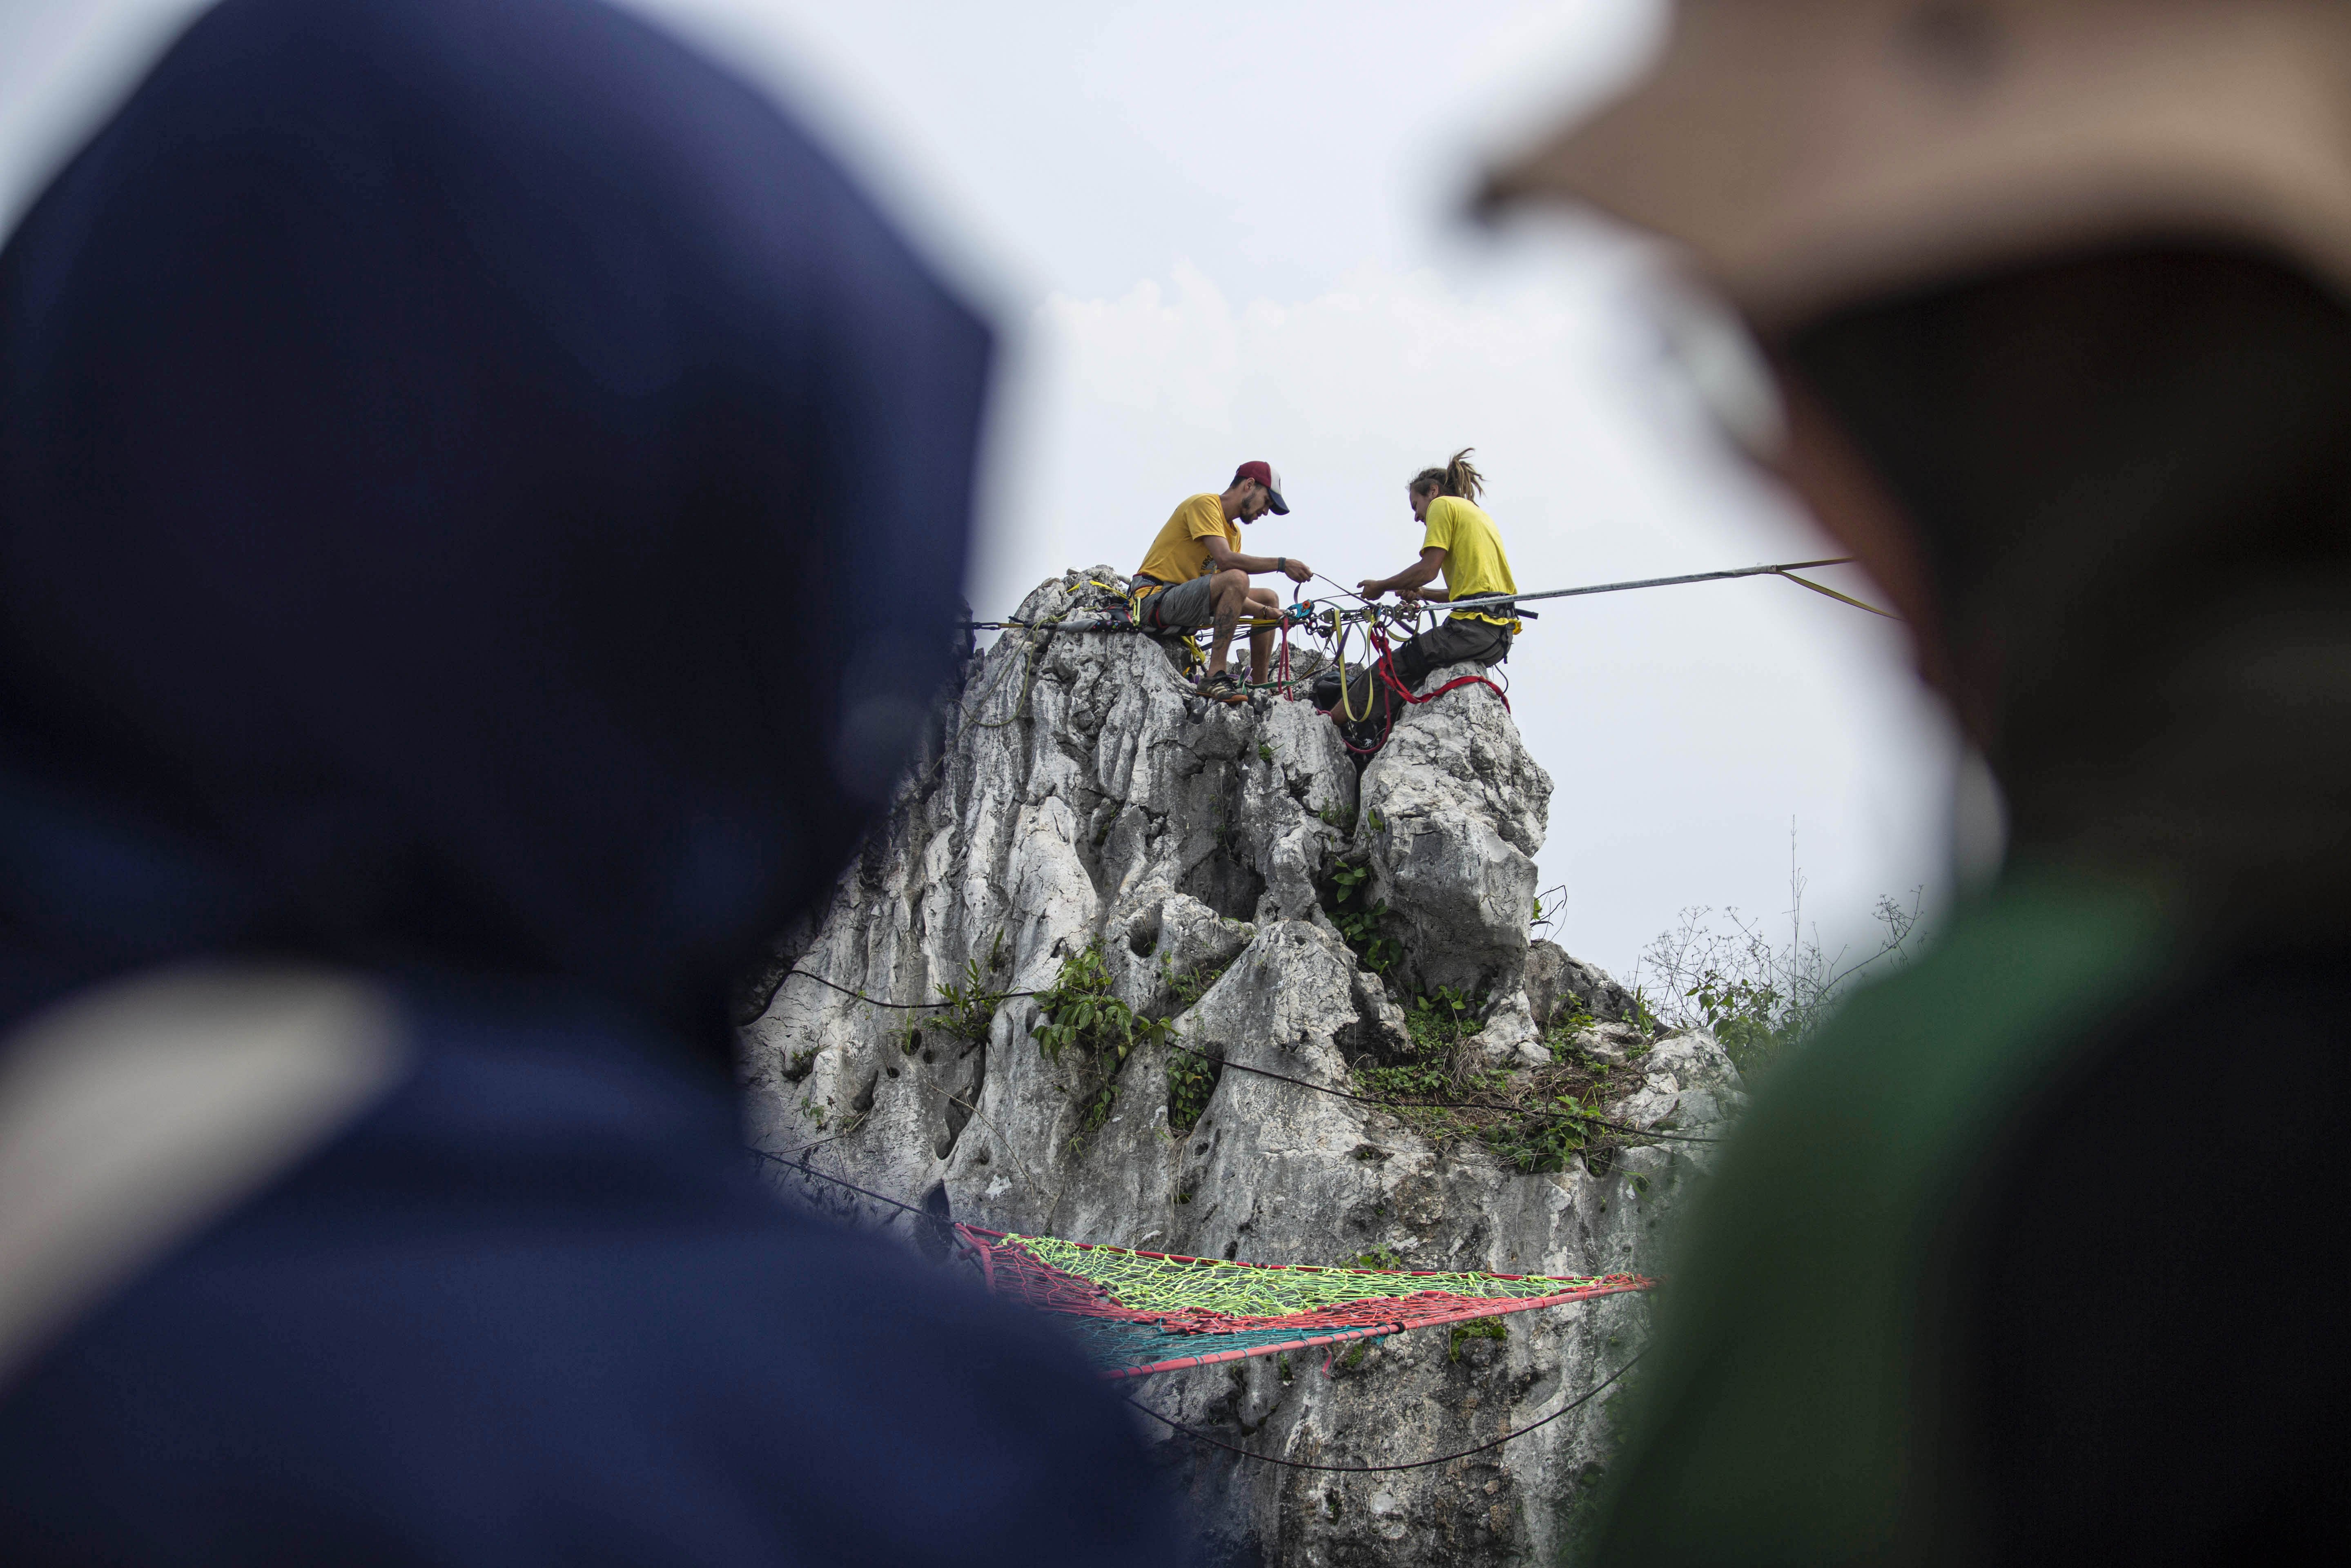 Penggiat olahraga ekstrim asal Ekuador mempersiapkan pengaman sebelum melakukan aksi highline di Tebing Gunung Hawu, Padalarang, Kabupaten Bandung Barat.\r\n